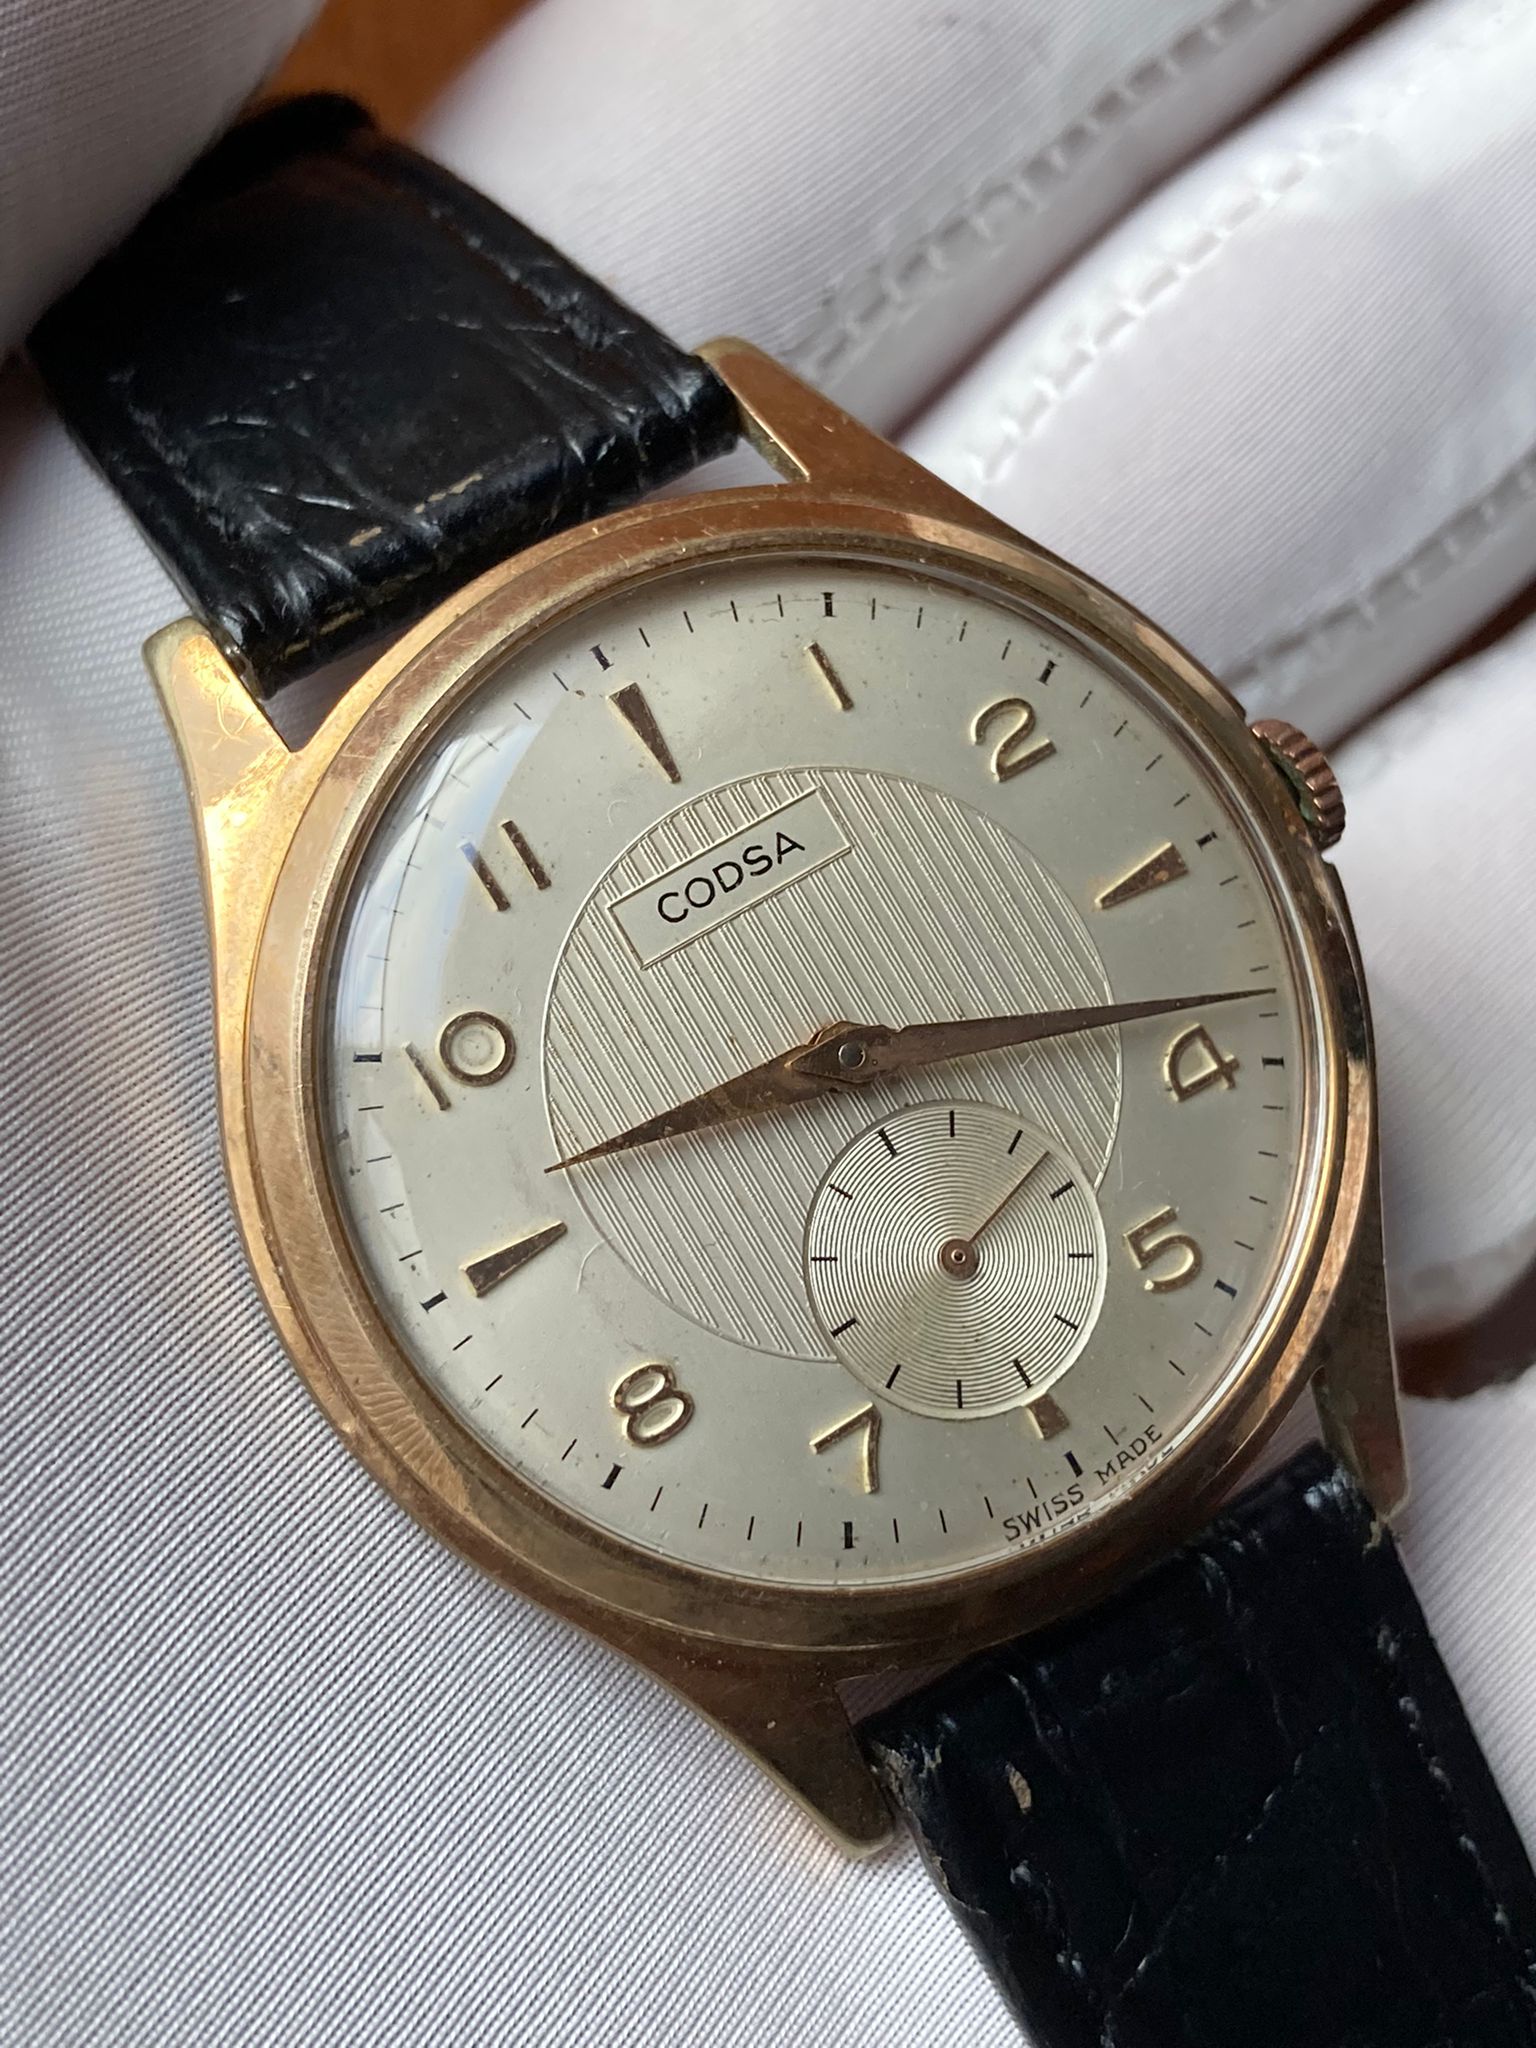 Reloj suizo esfera texturizada corsa revisado - Oscar watches